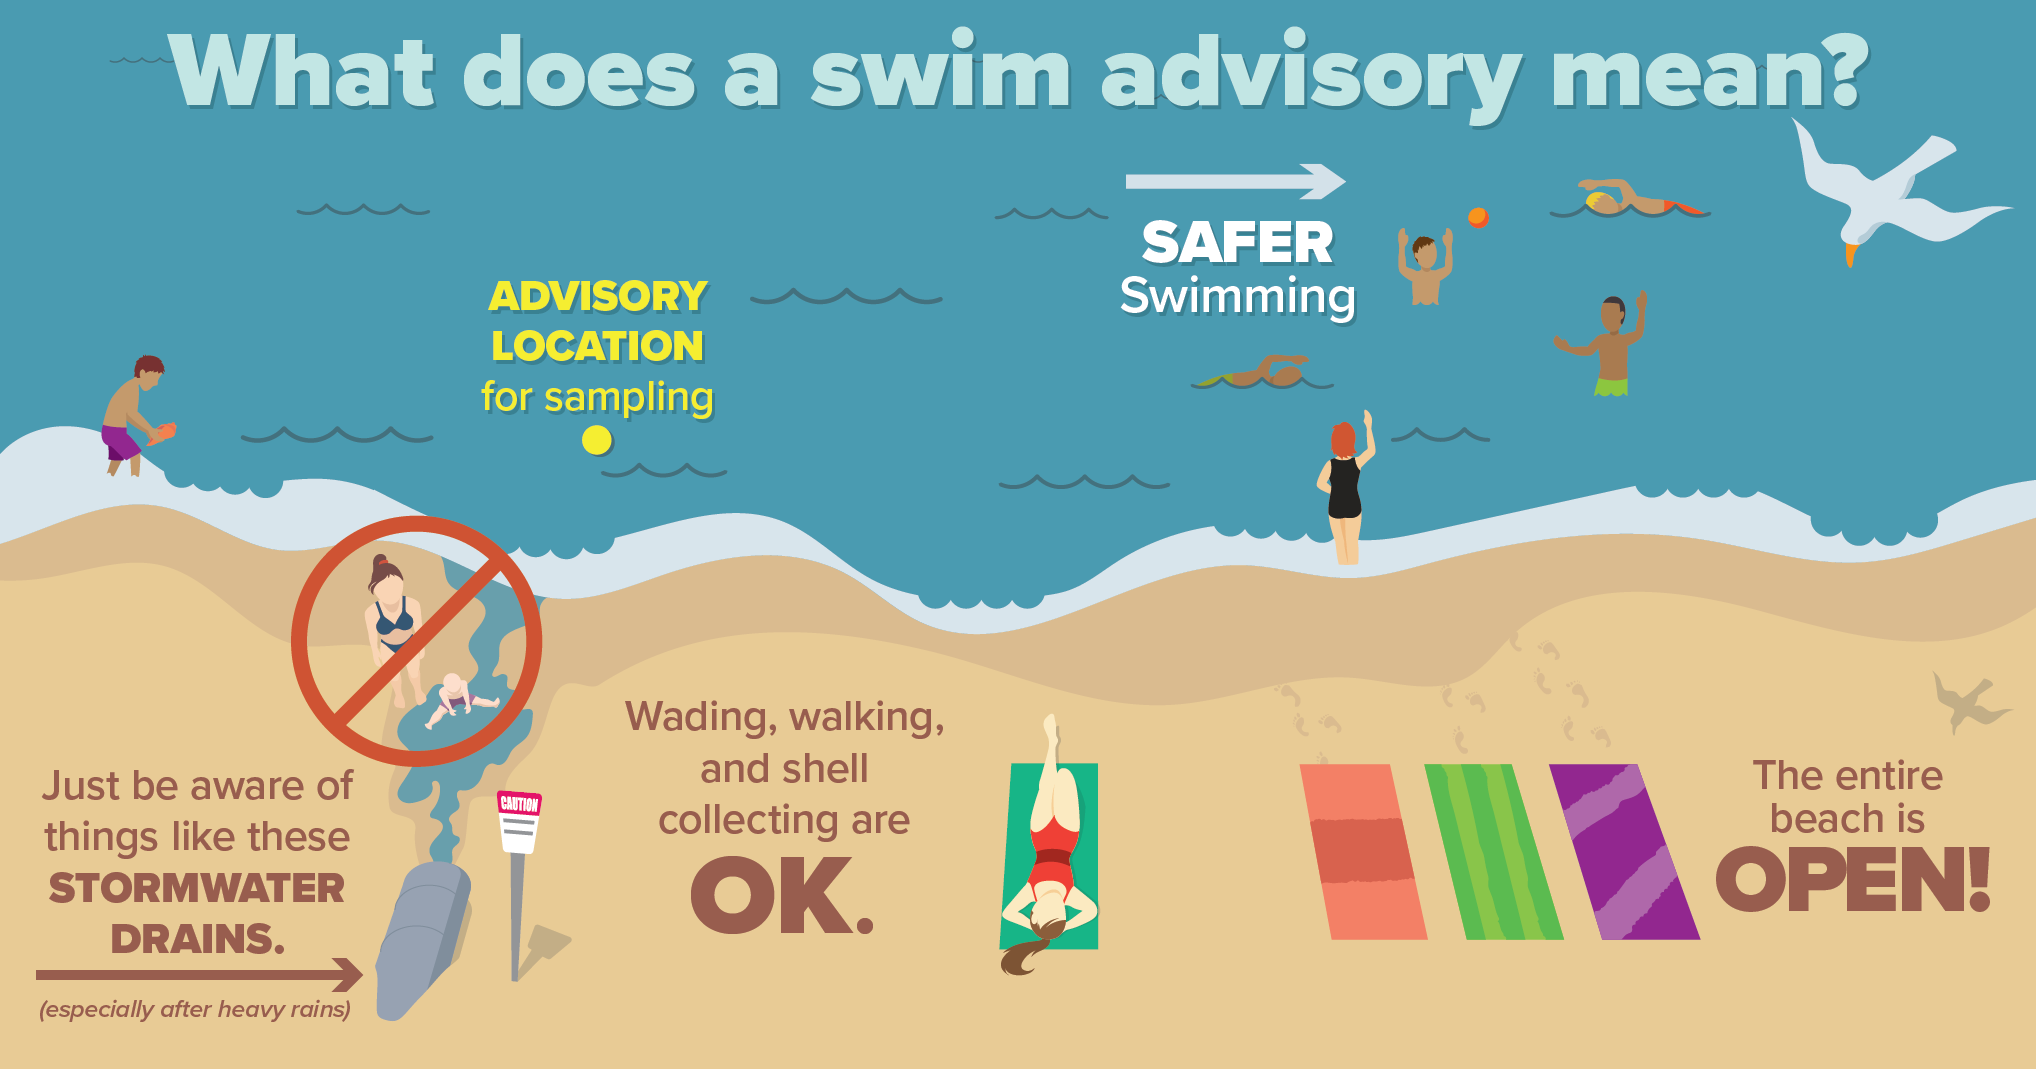 swimming advisory warning image